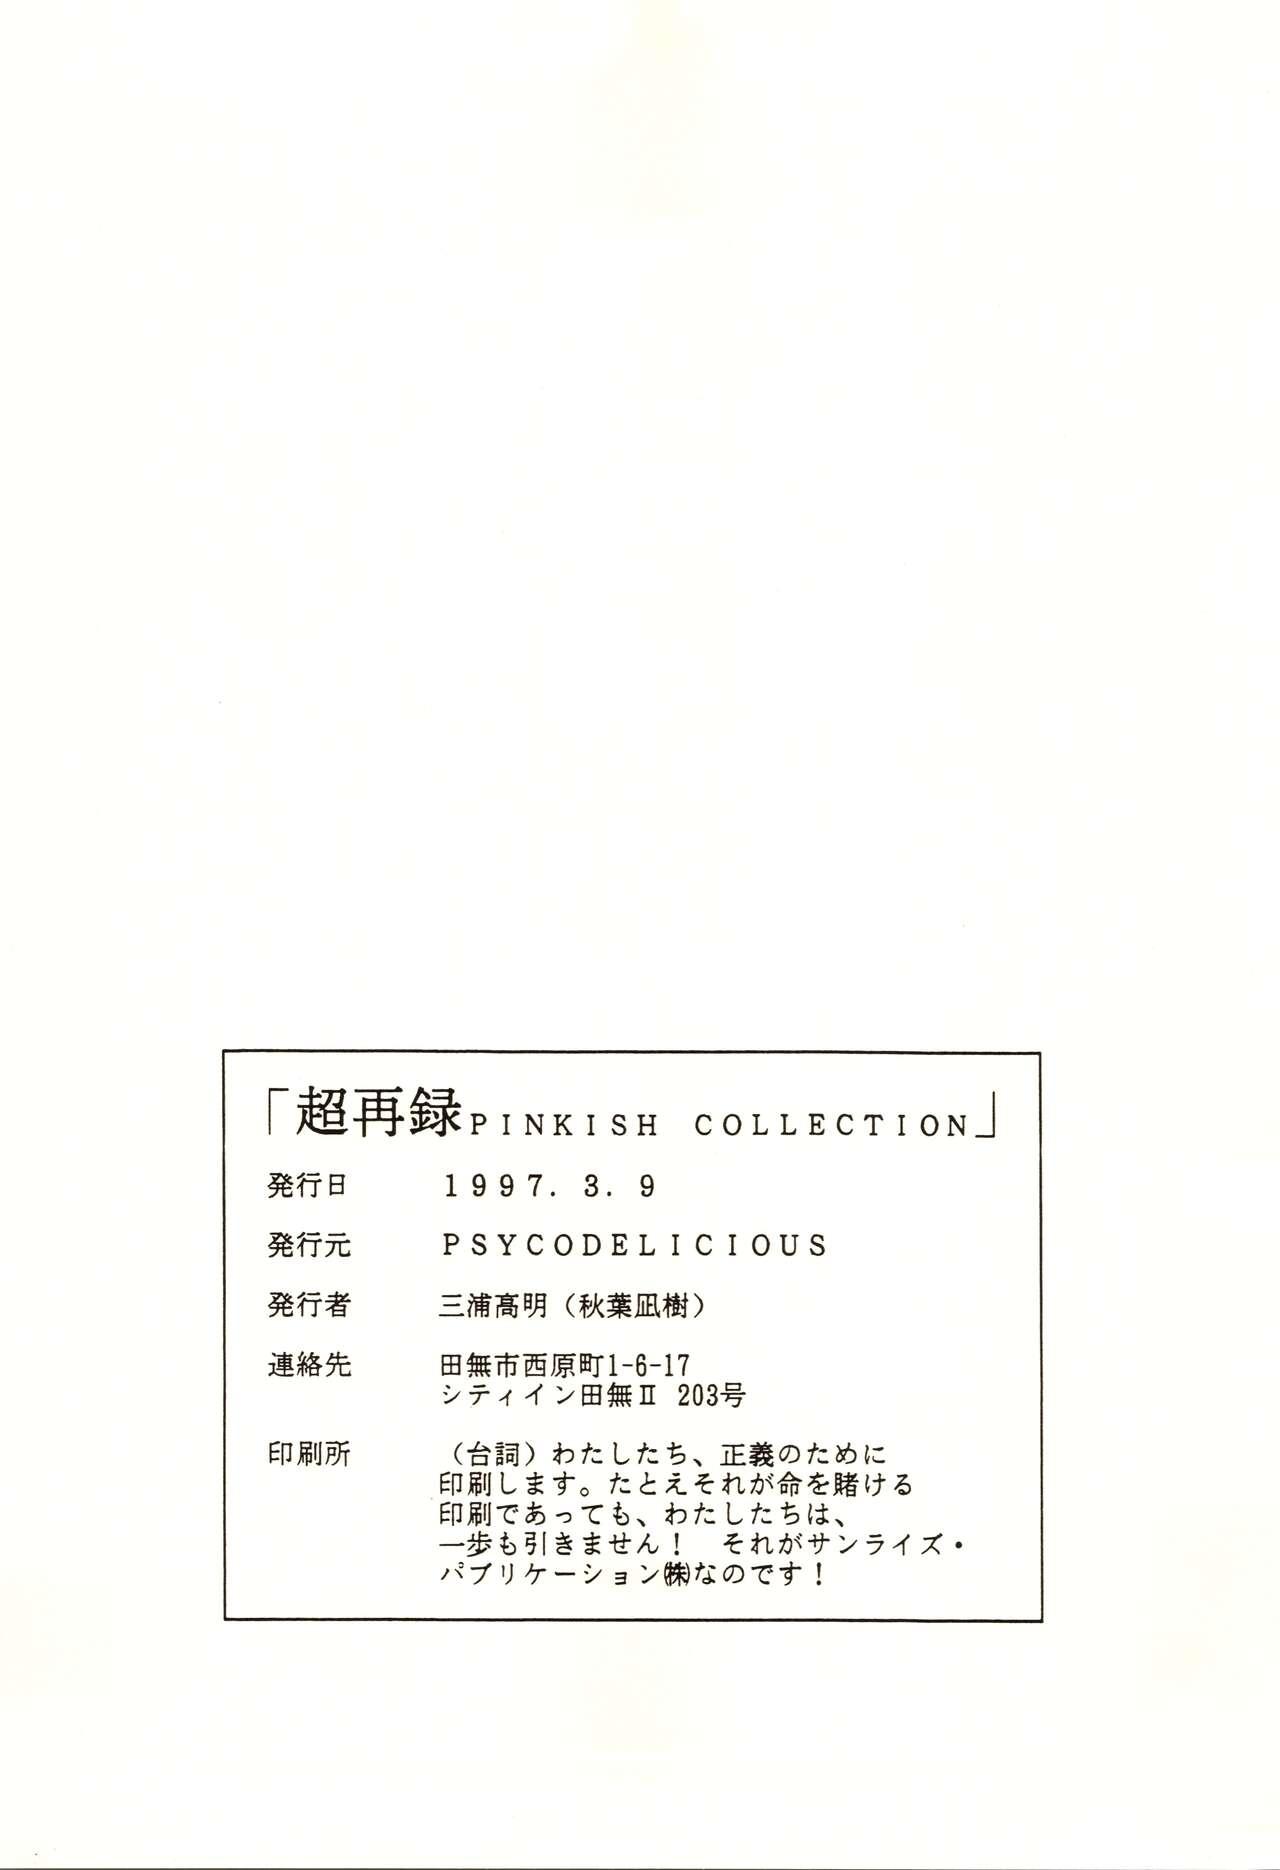 Chou Sairoku PINKISH COLLECTION 106